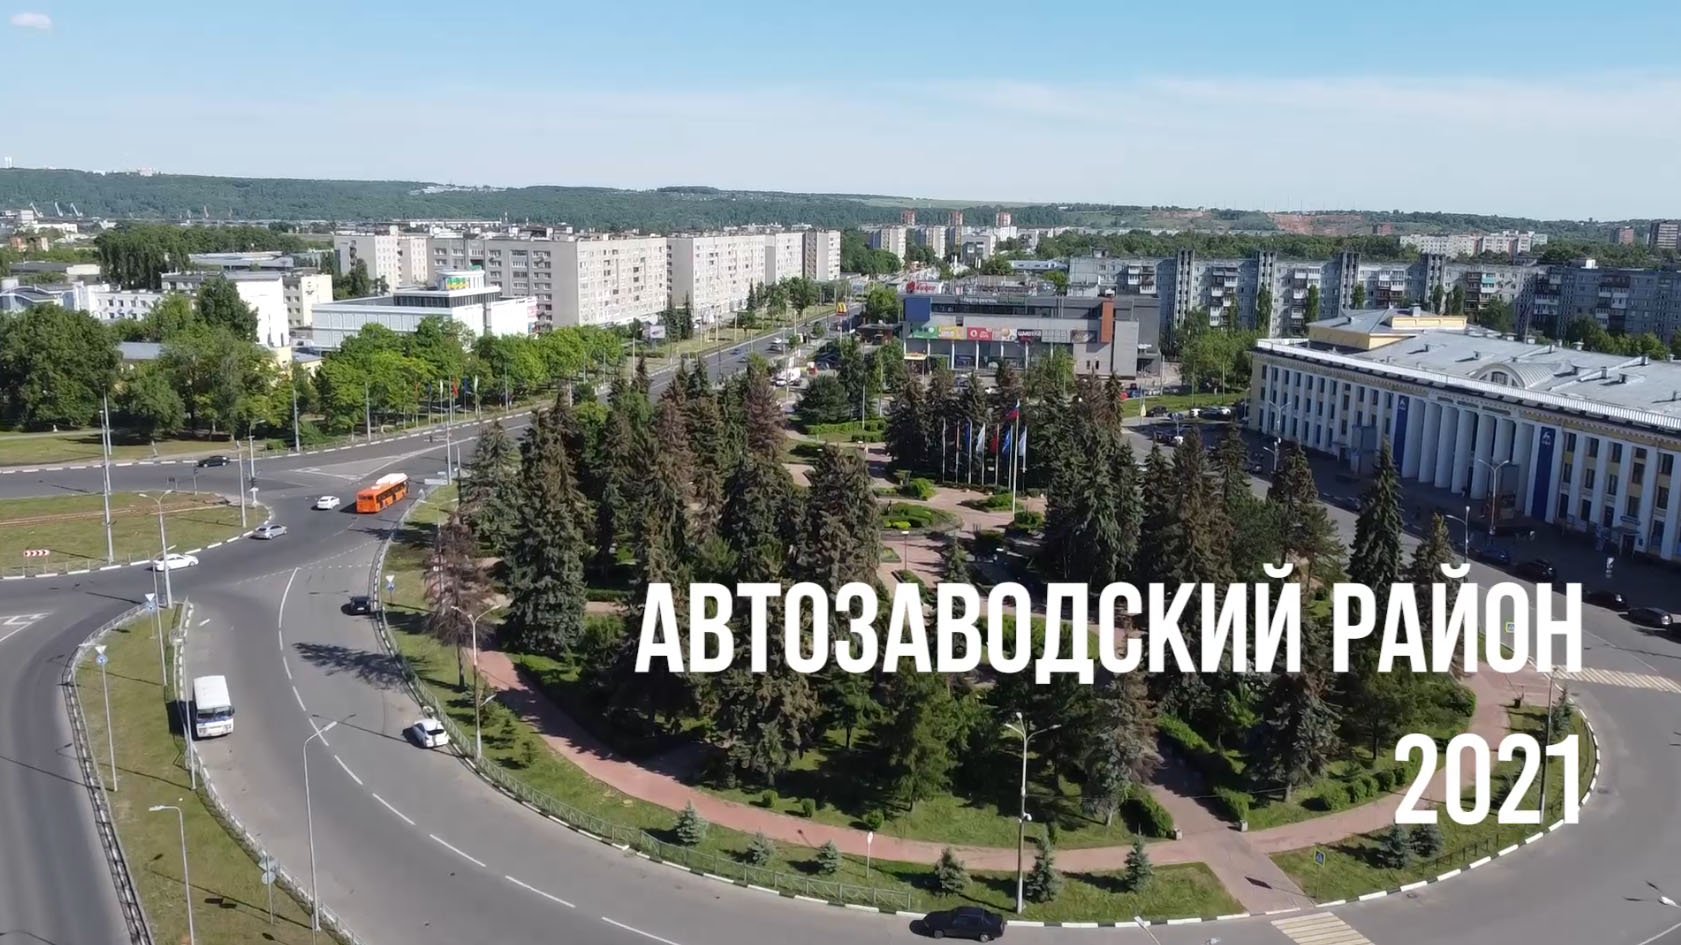 Автозаводский район Нижнего Новгорода